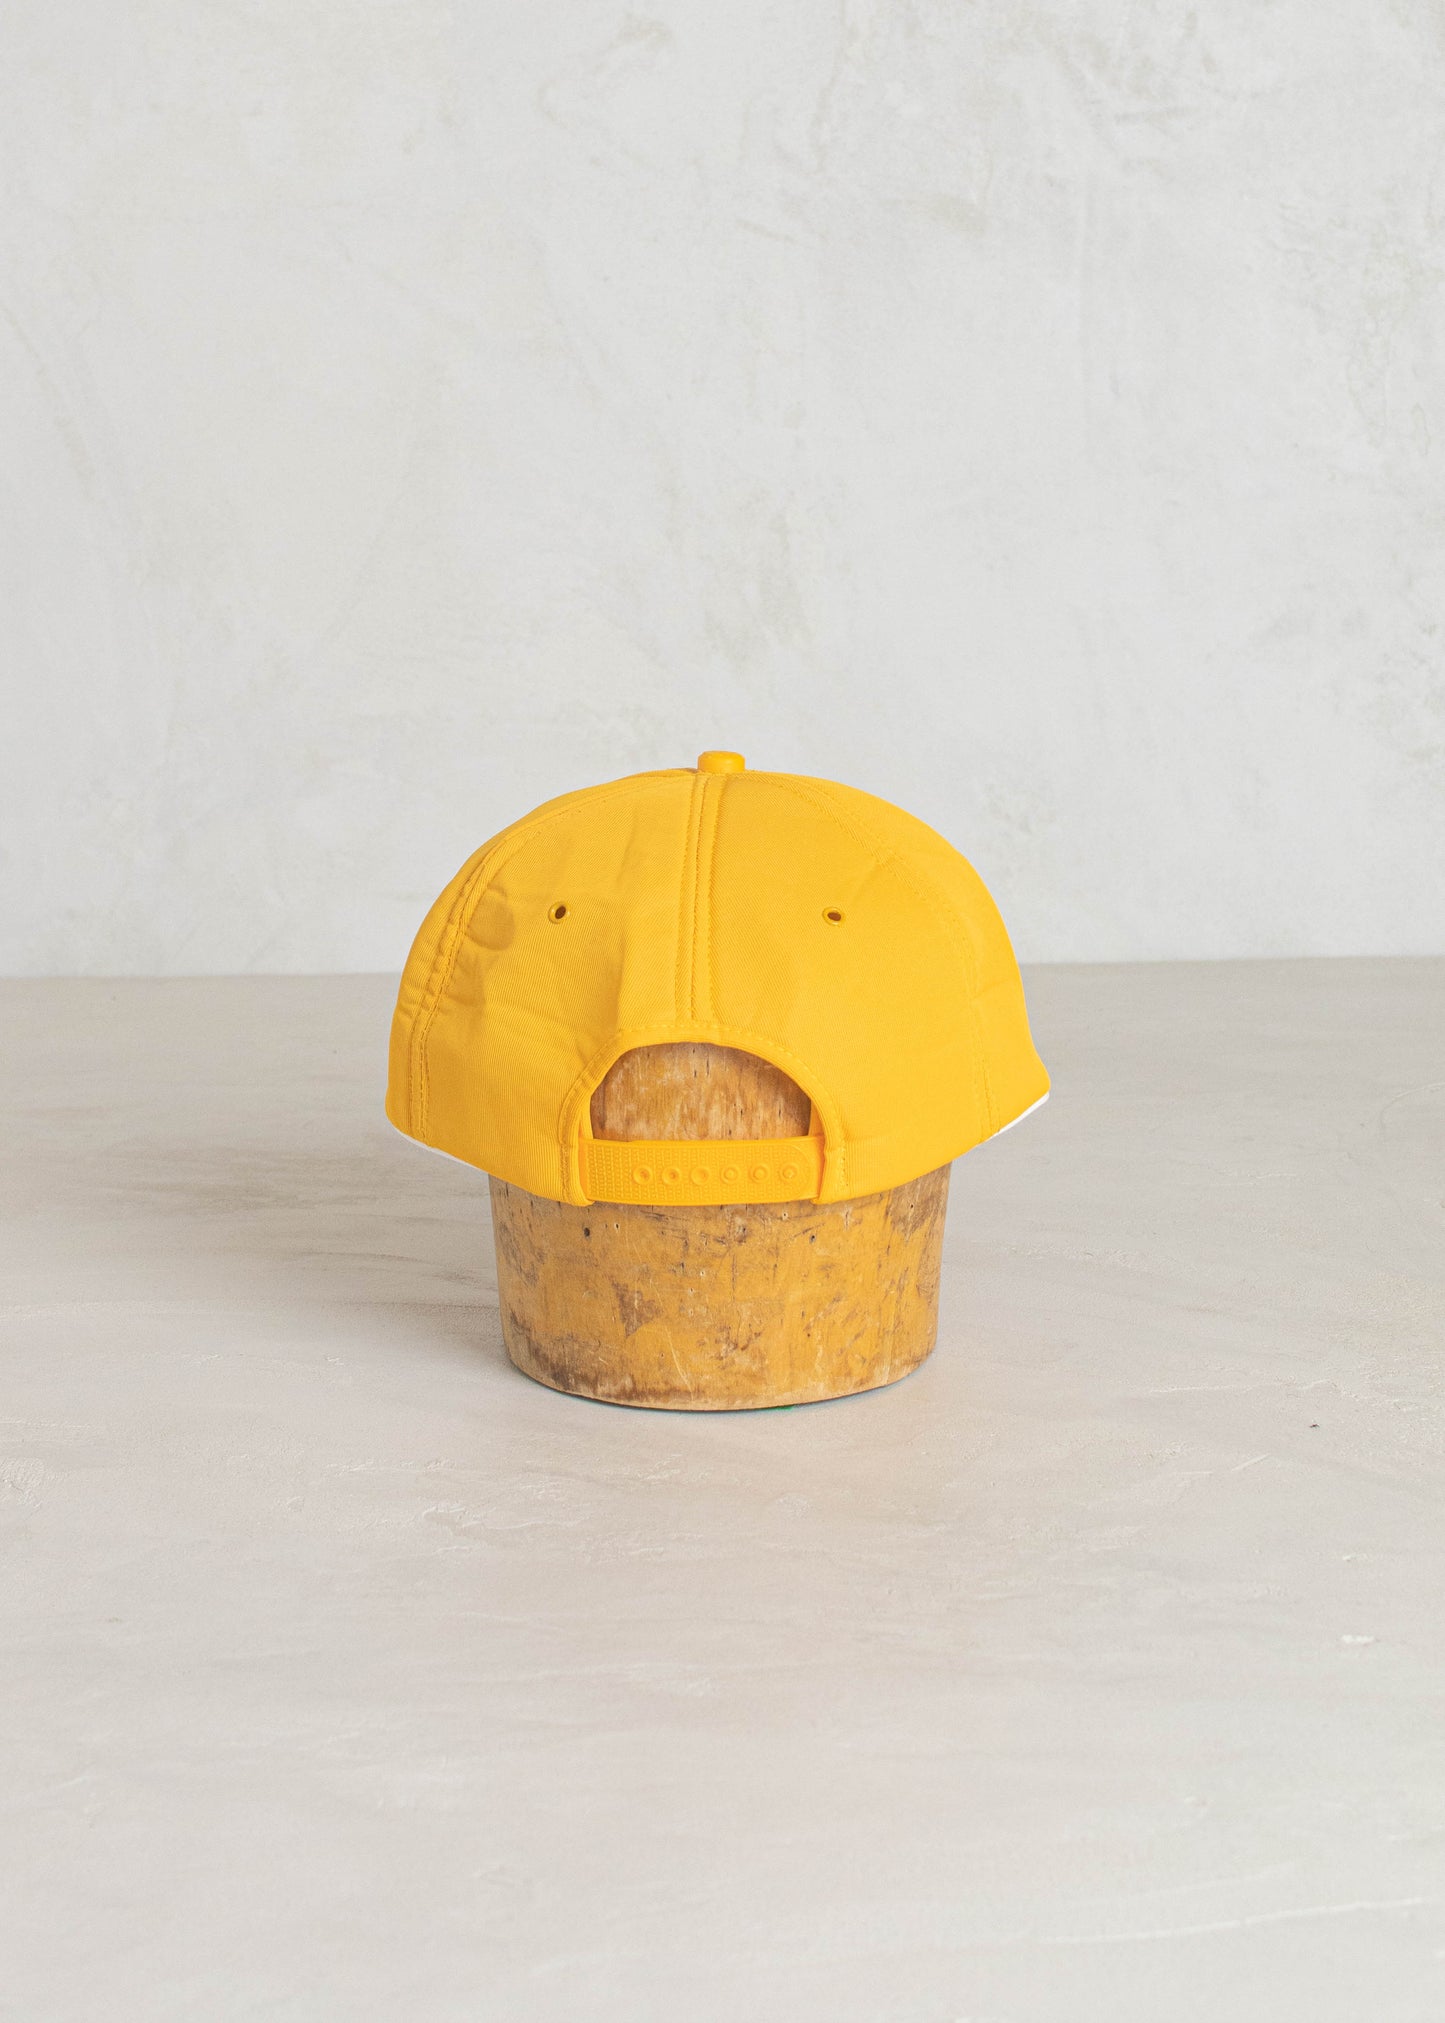 1980s Promo-Wear Alberta Potatoes Trucker Hat